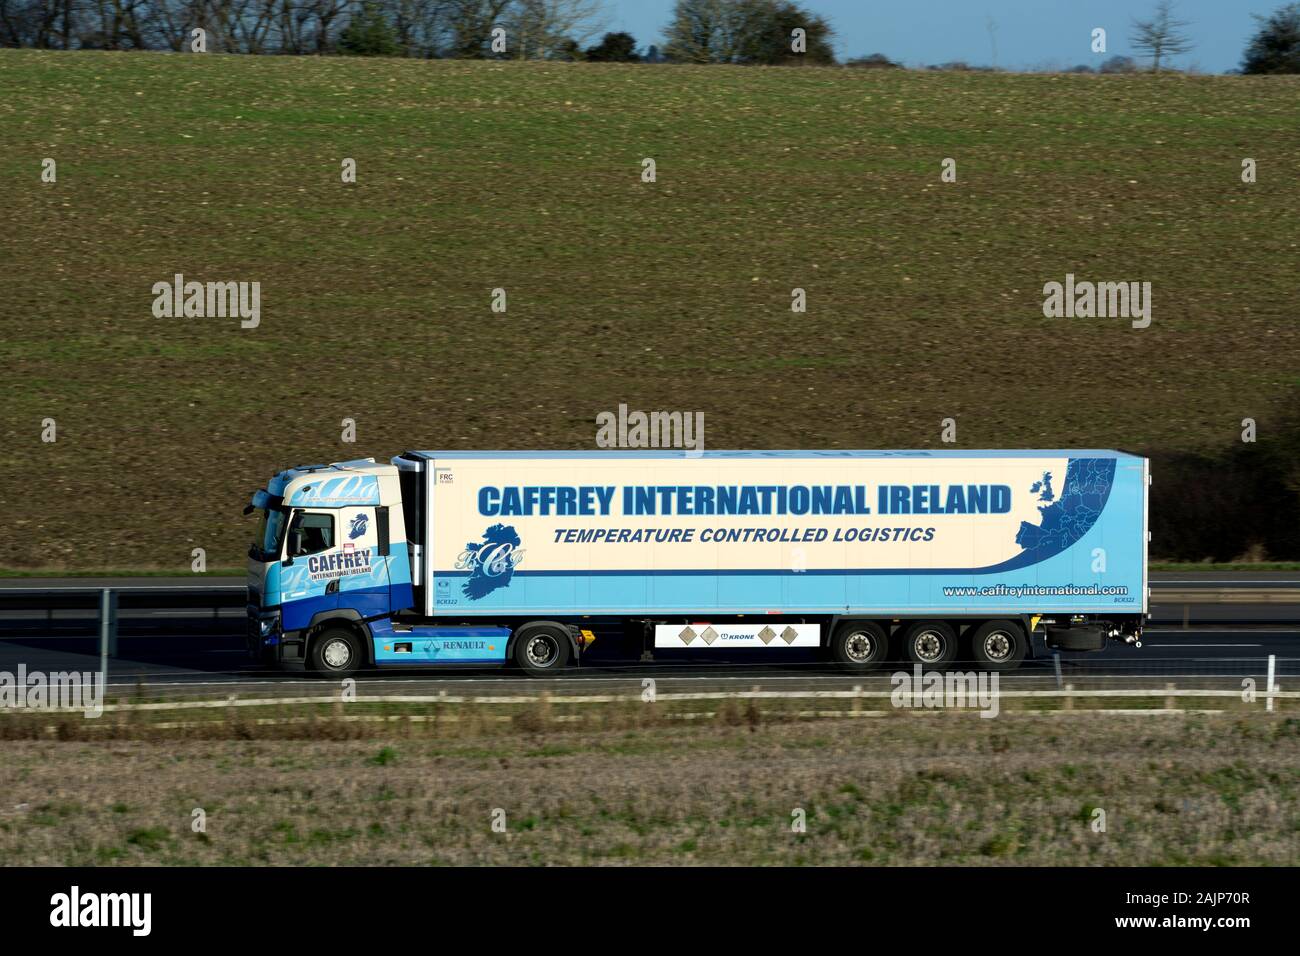 Caffrey Internetional Ireland lorry on the M40 motorway, Warwickshire, UK Stock Photo